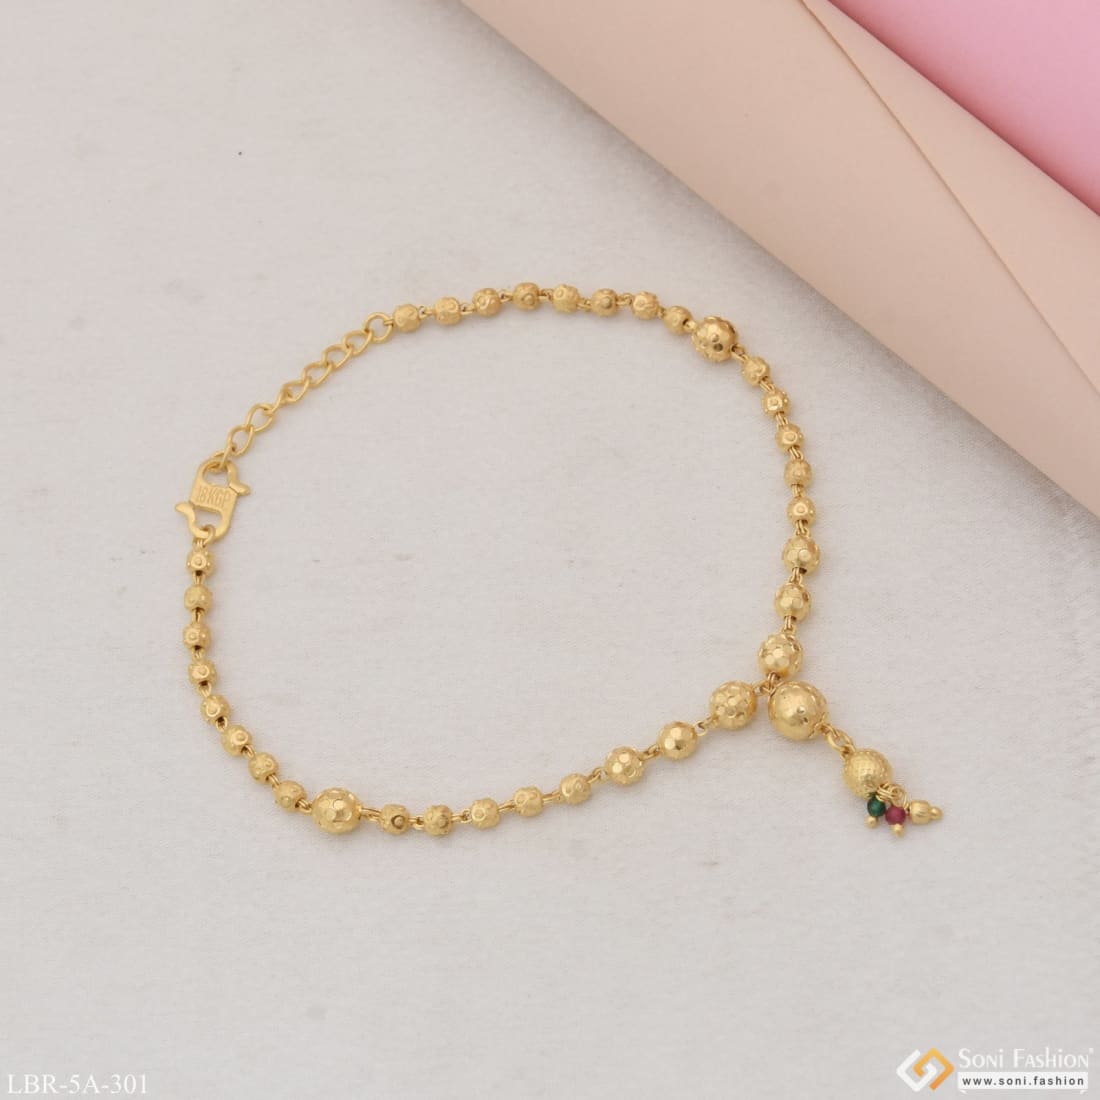 Female Gold Bracelet On Girl Hand Stock Photo 2148103851 | Shutterstock